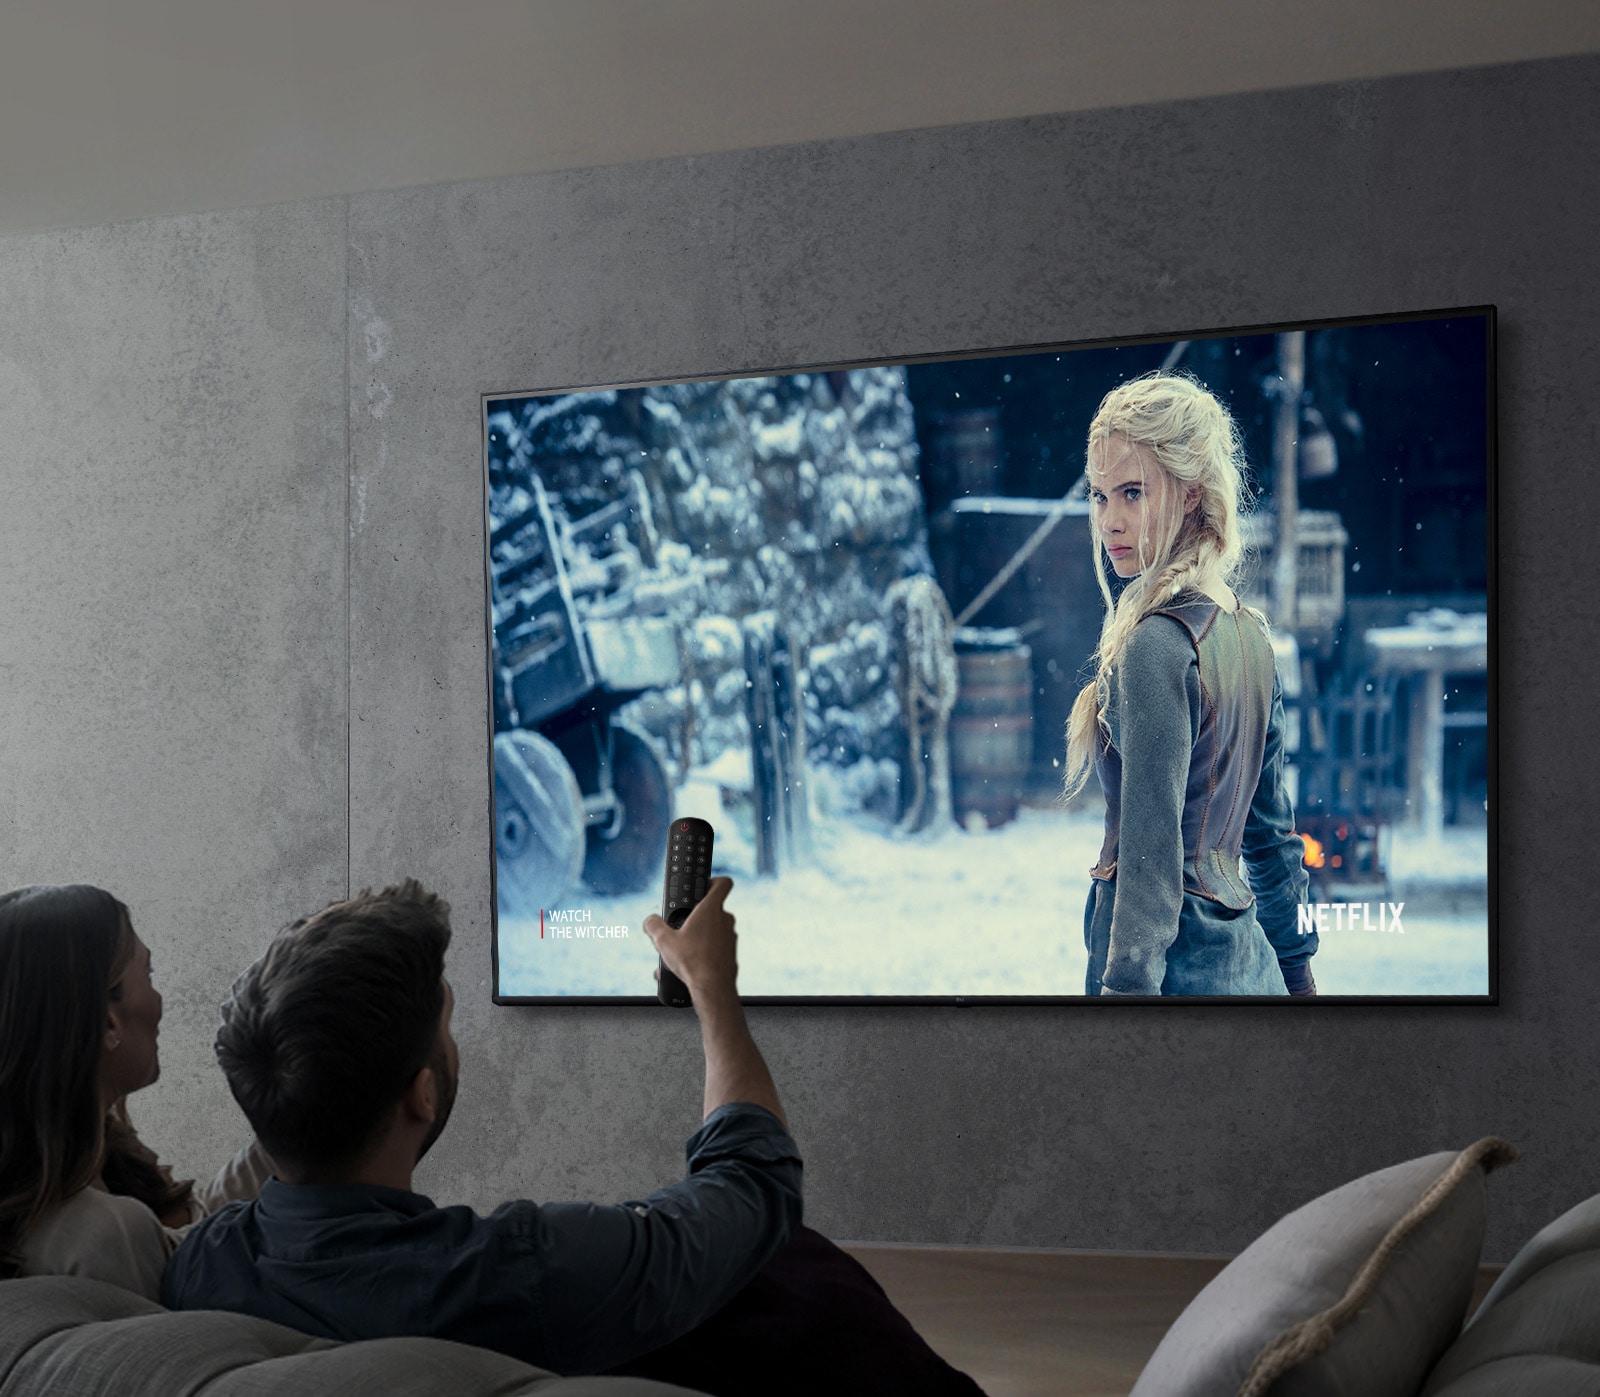 Slika, ki prikazuje par, ki gleda oddajo s televizorjem LG UHD.